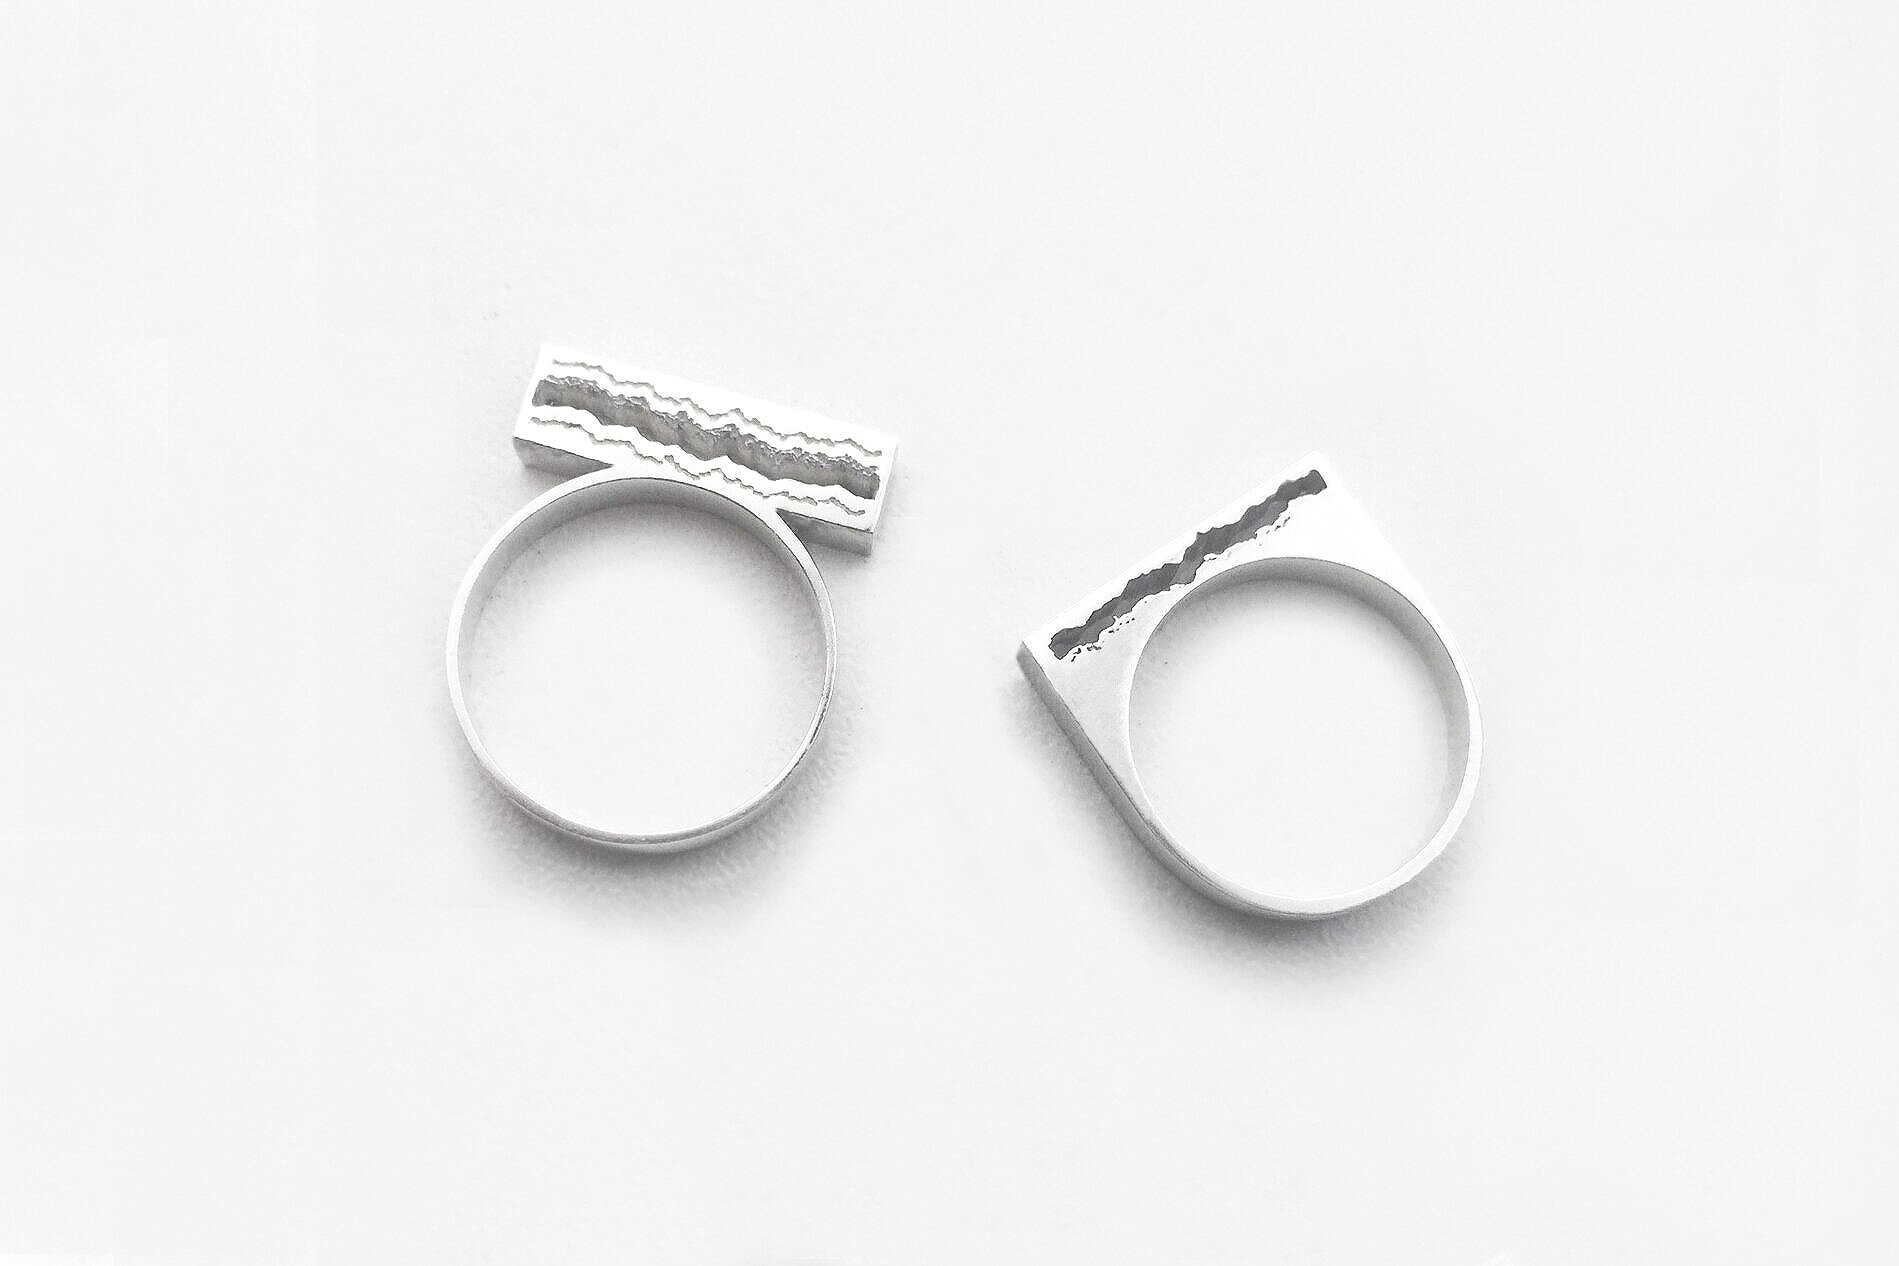 Pair of Custom Sterling Silver Rings